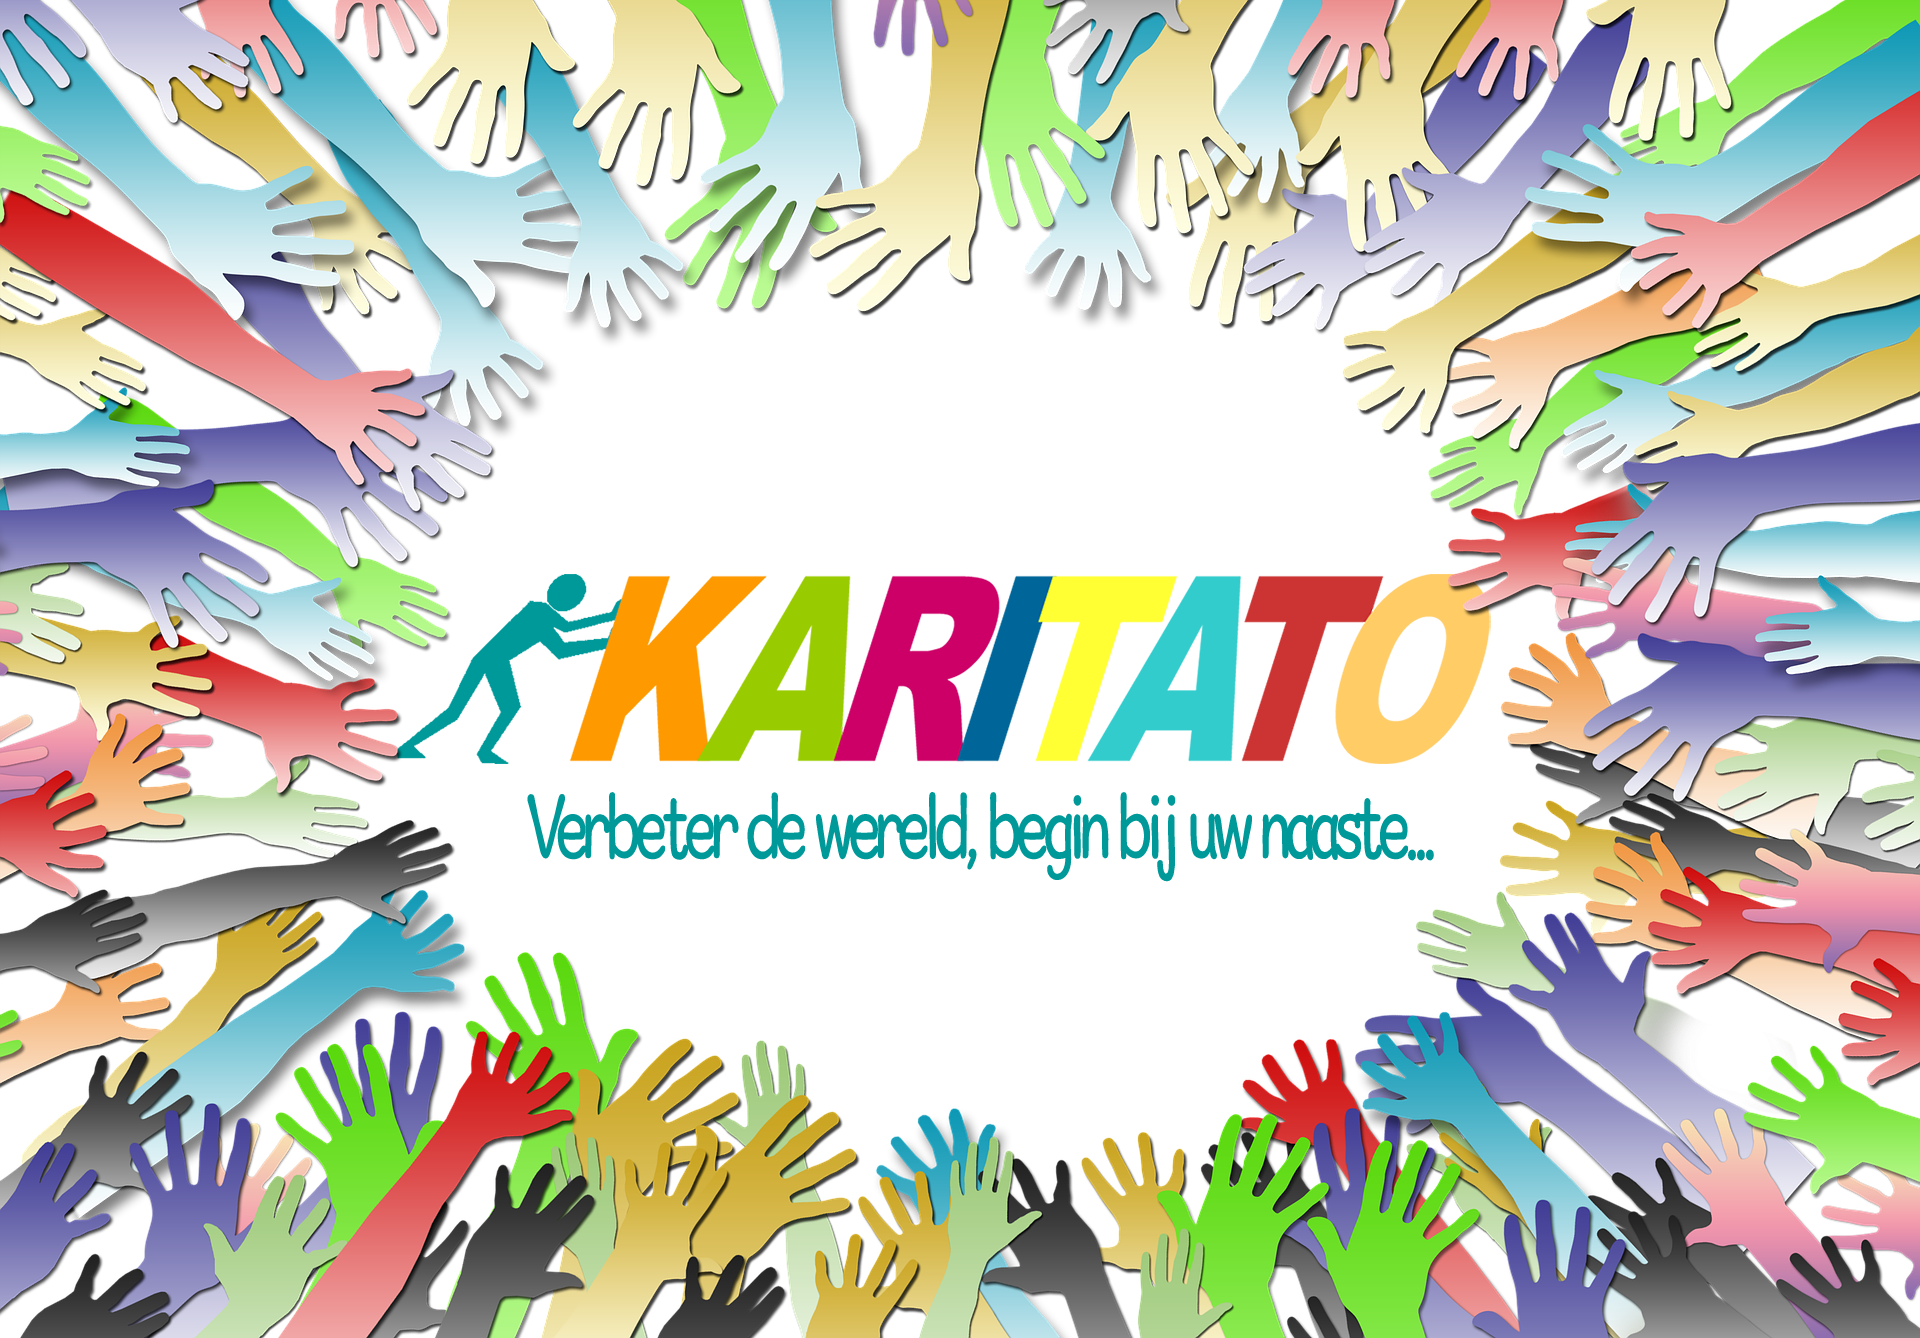 karitato